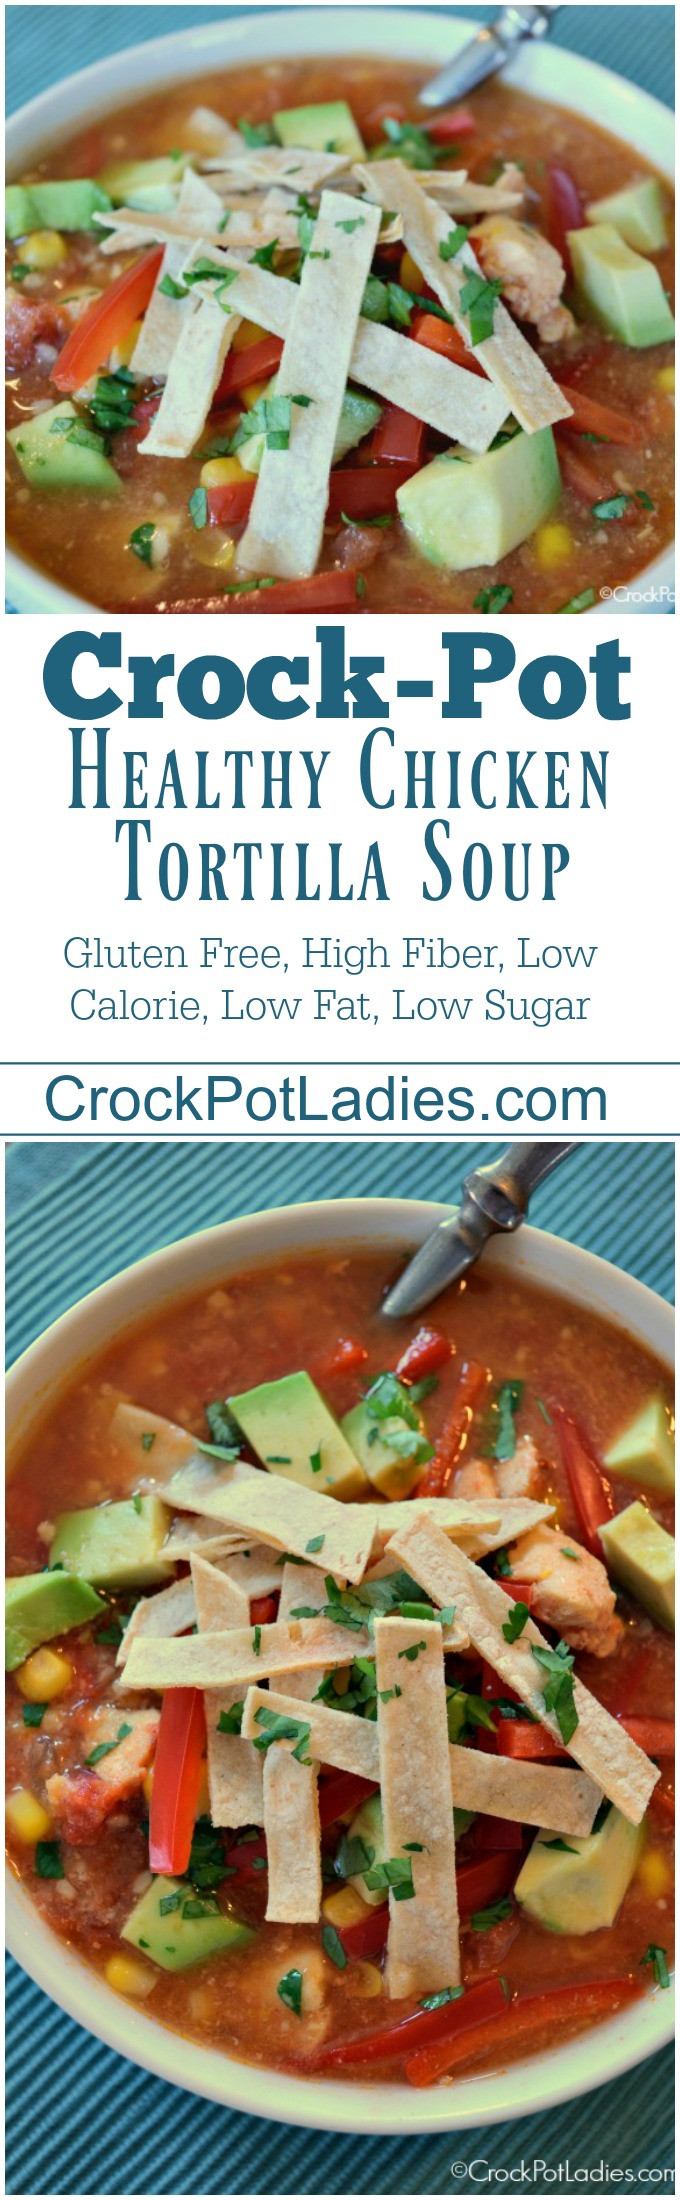 Crock Pot Chicken Soup Recipes Healthy
 Crock Pot Healthy Chicken Tortilla Soup Crock Pot La s